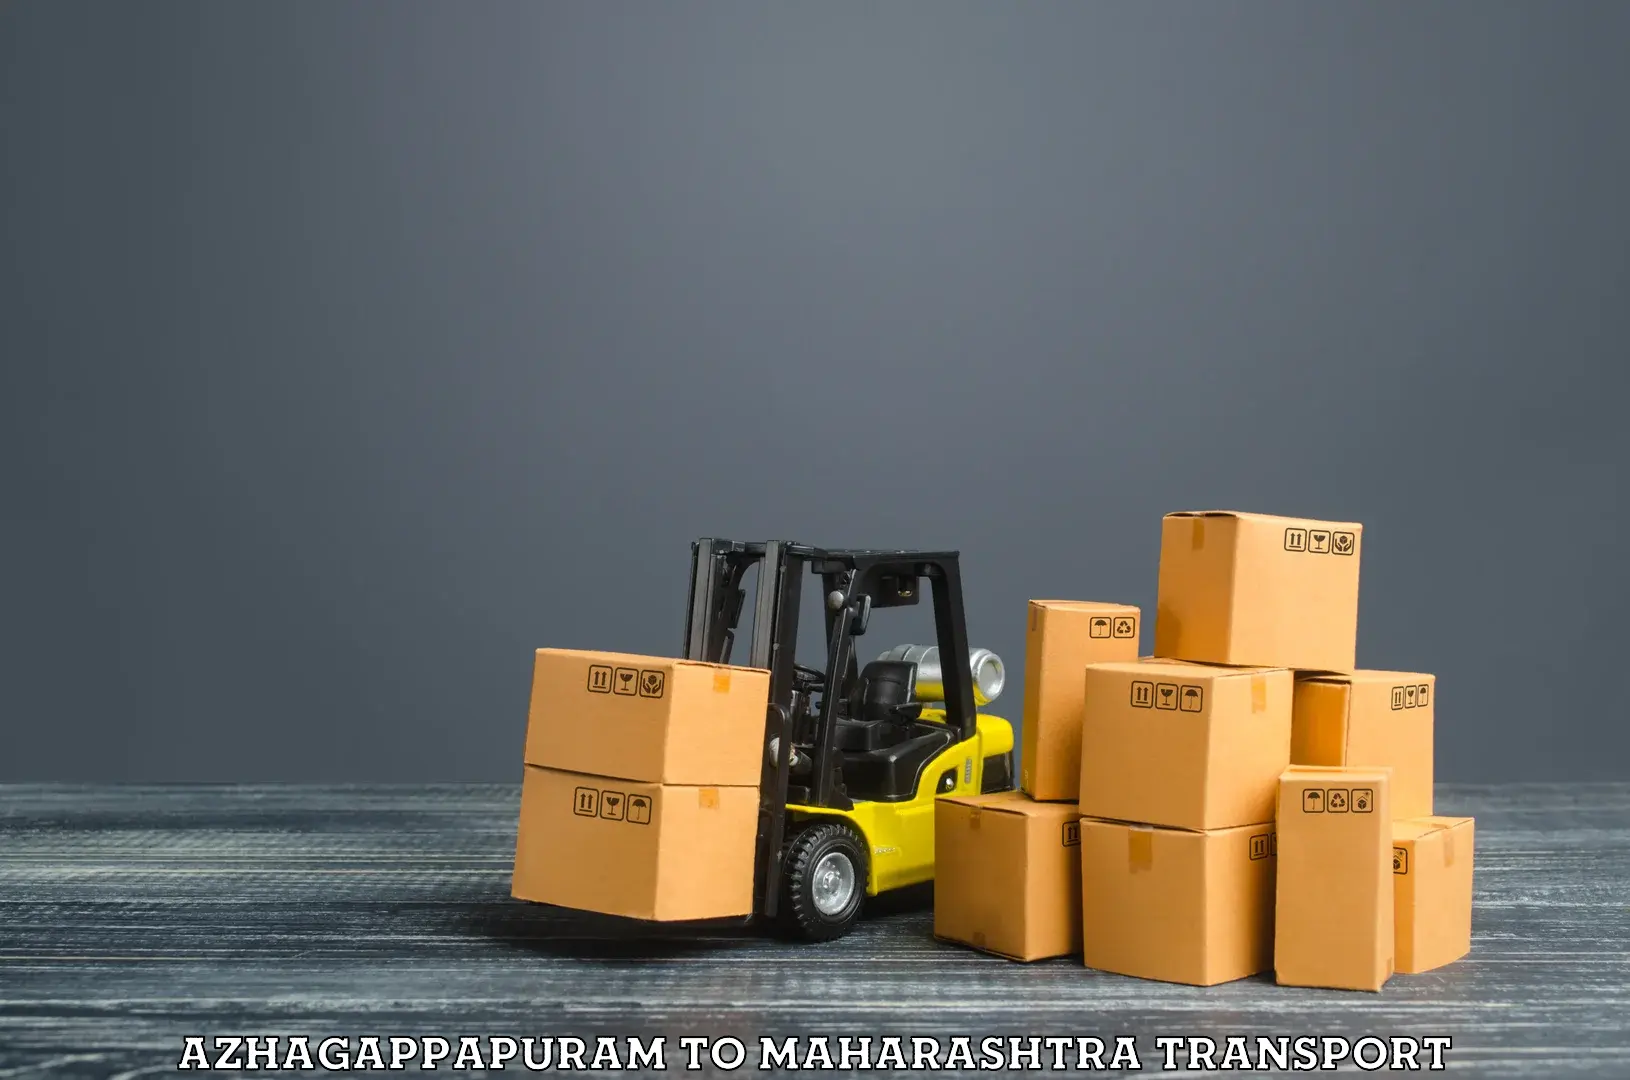 Cargo transportation services Azhagappapuram to Lonar